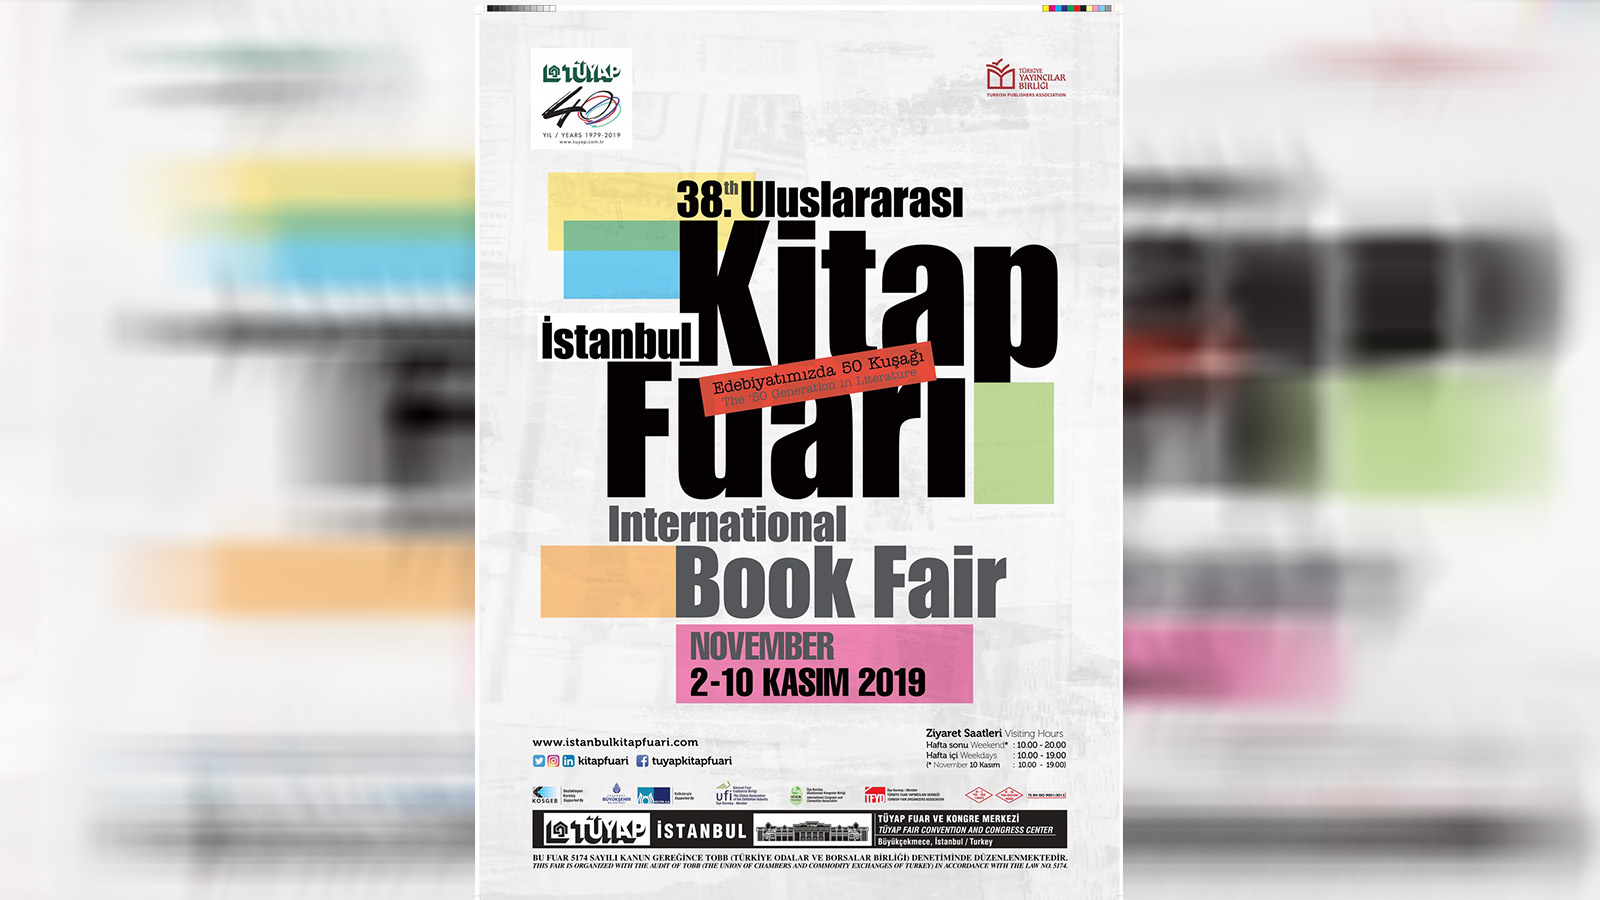 Uluslararası İstanbul Kitap Fuarı etkinlik programı açıklandı